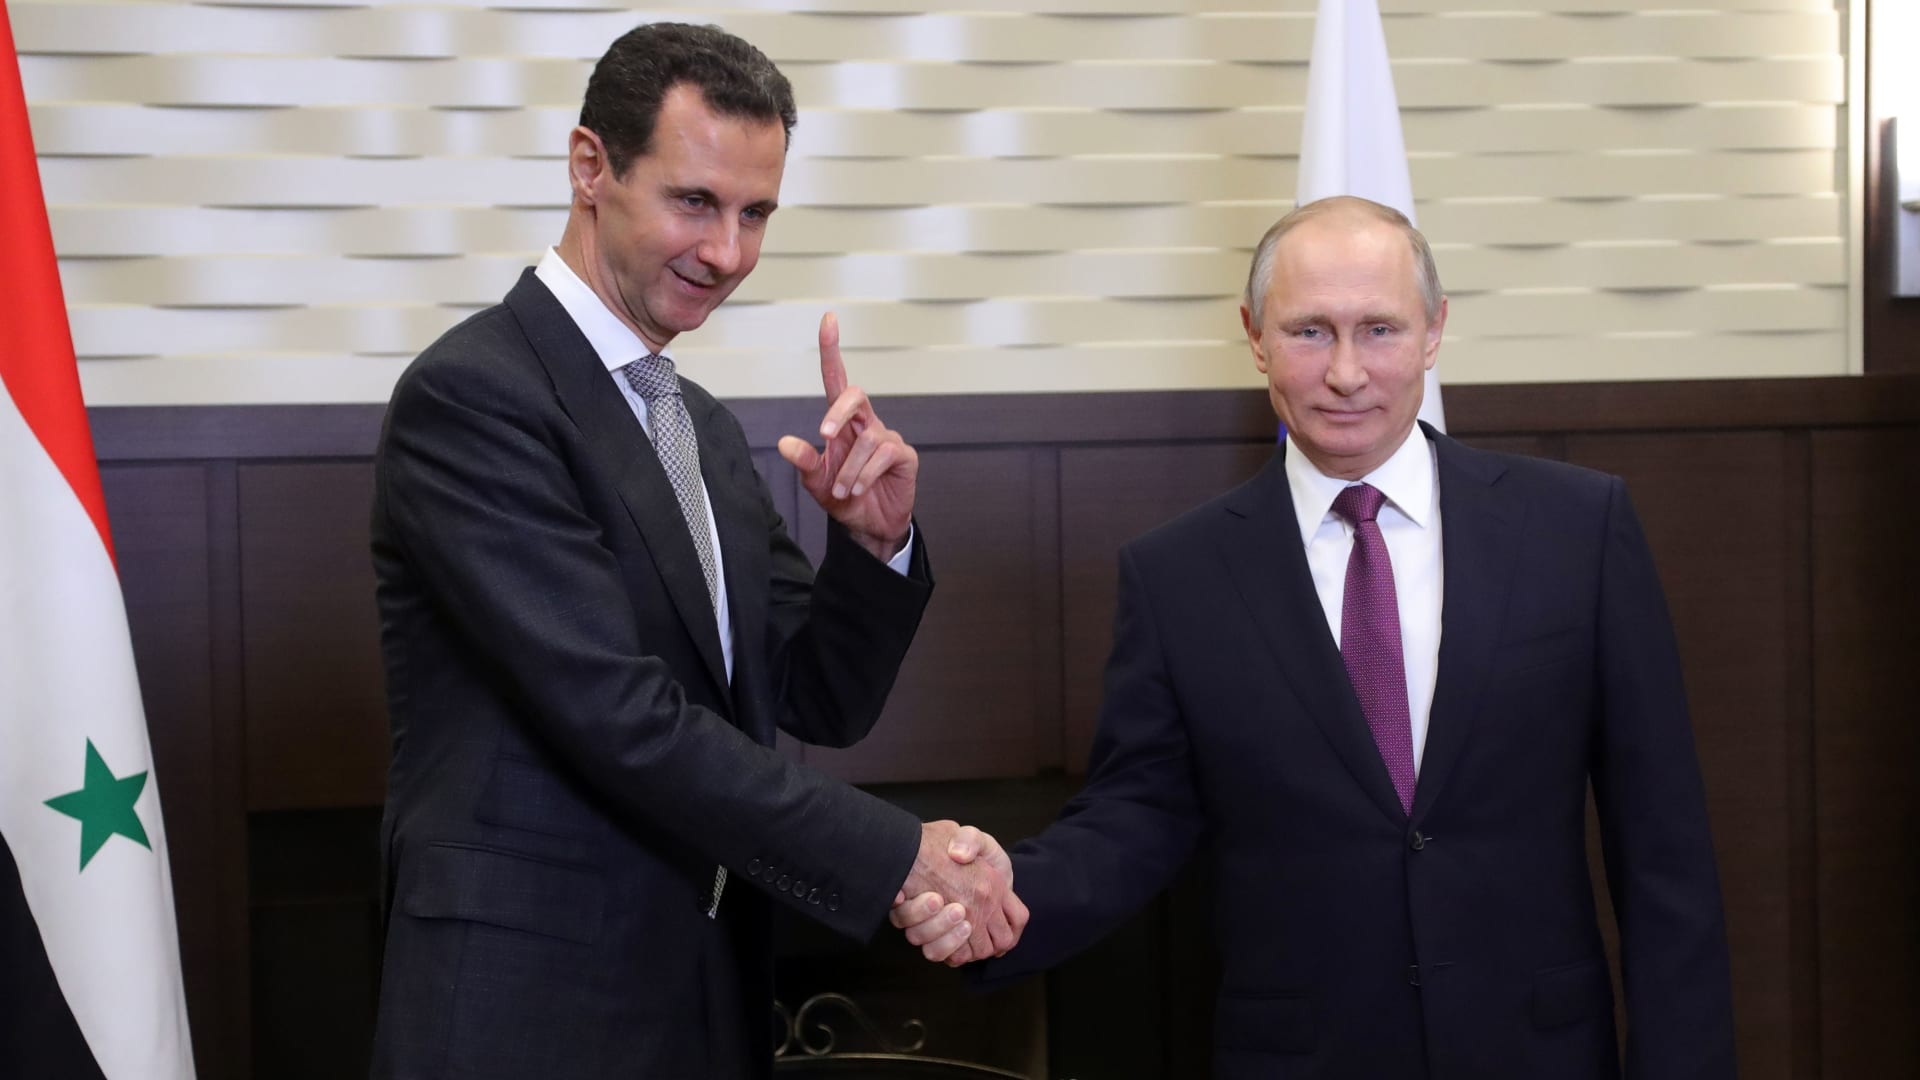 بشار الأسد لـ"بوتين": ماضون في حربنا المشتركة ضد الإرهاب والتطرف العابر للحدود